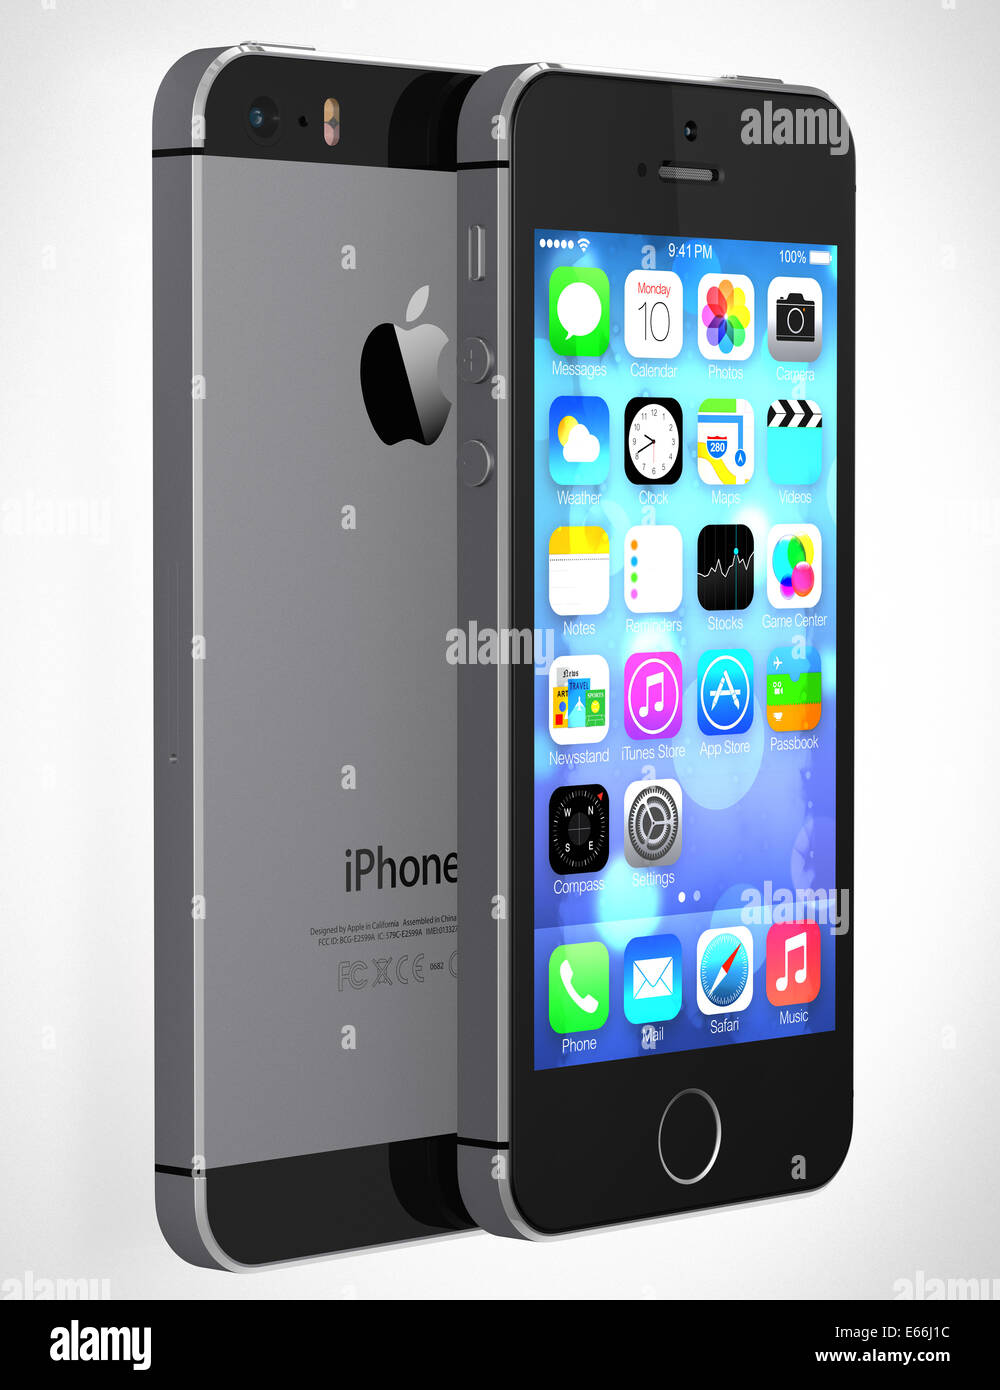 Galati, Romania - Agosto 12, 2014: Apple iPhone 5s che mostra la schermata iniziale con iOS7. Alcune delle nuove funzioni di iPhone 5s Foto Stock